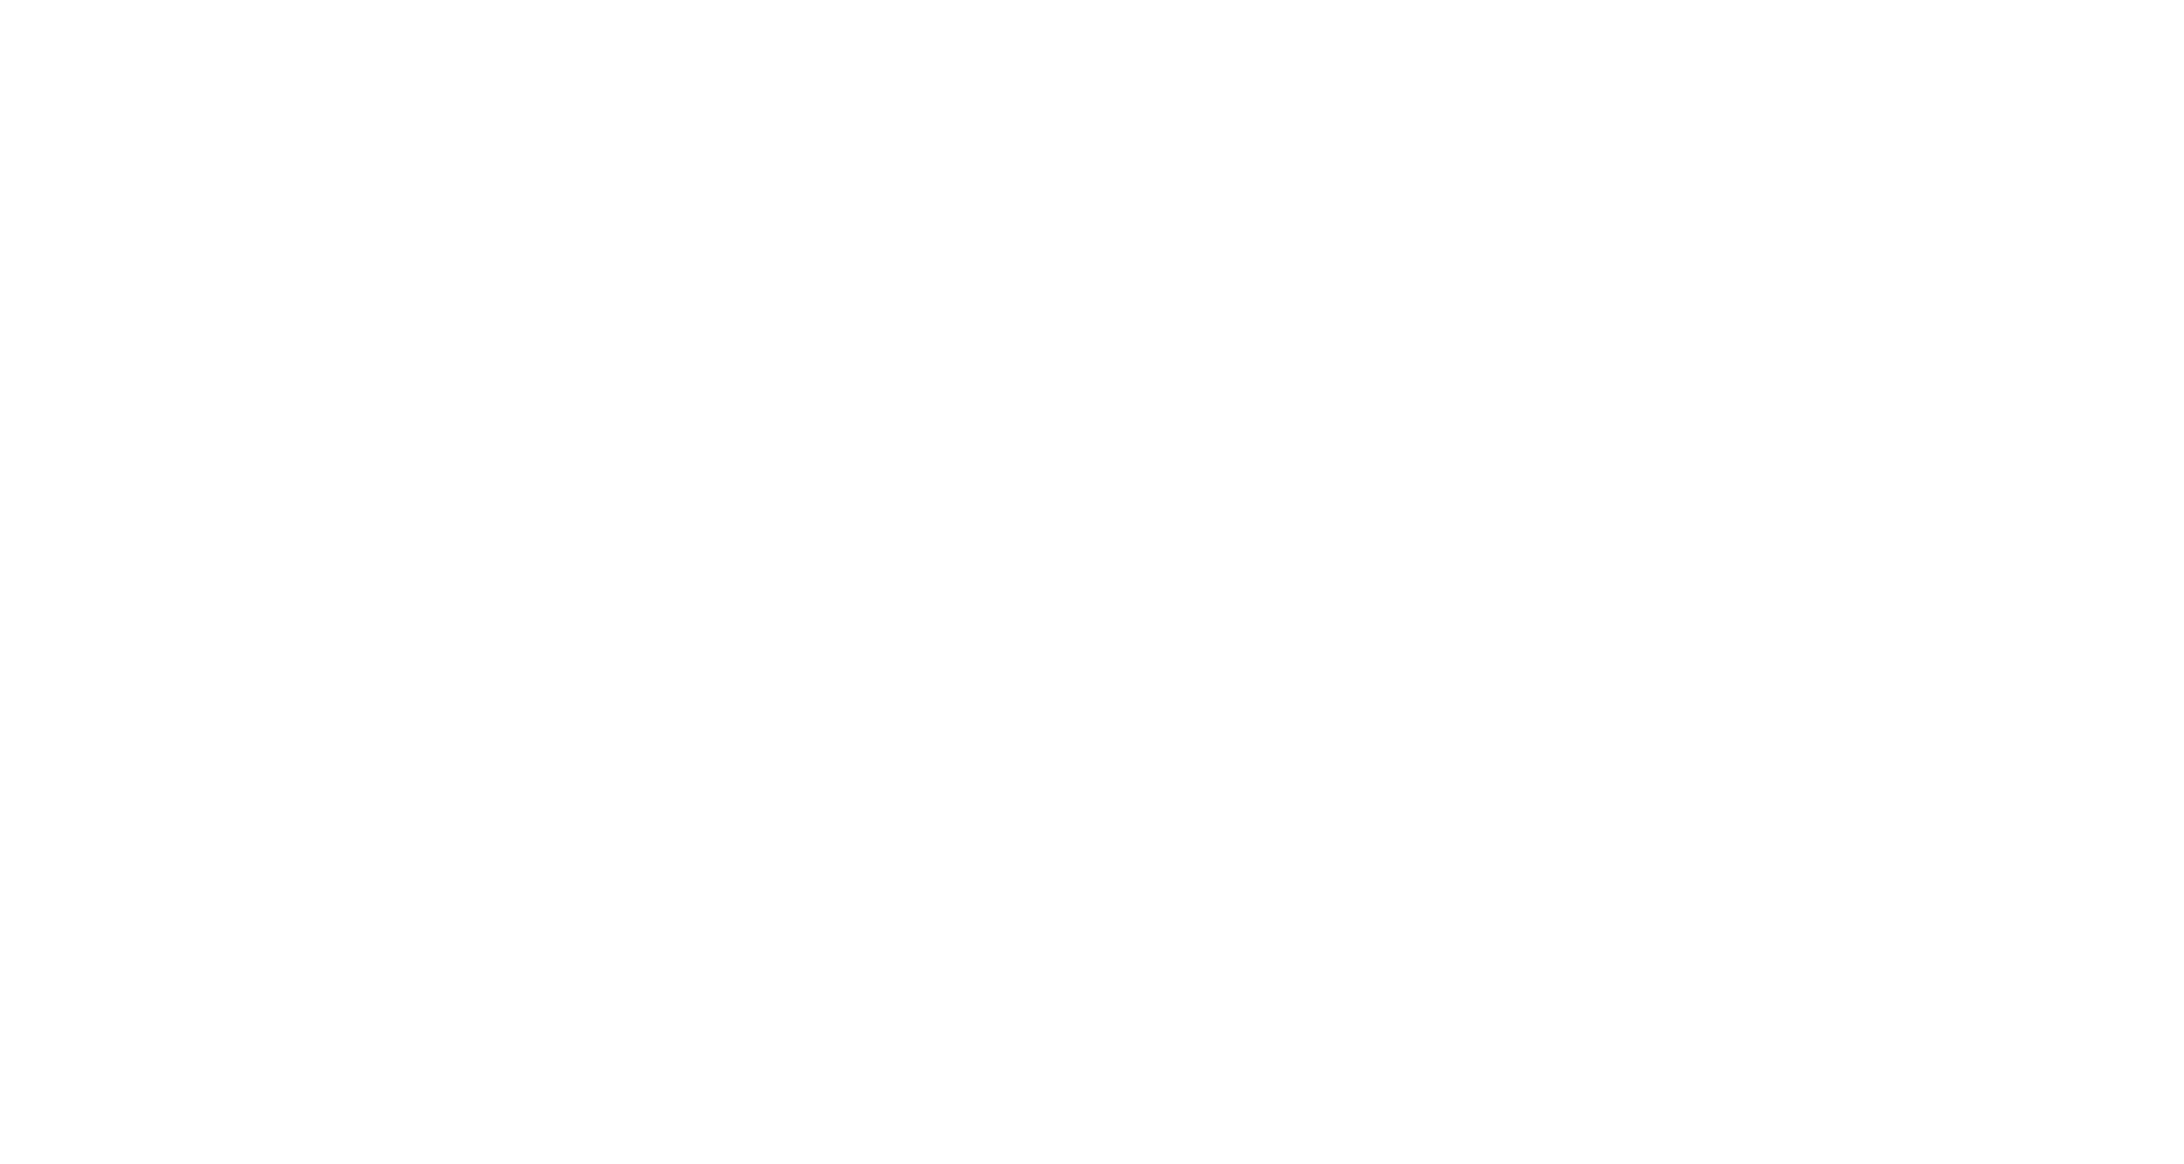 Anais explora tours